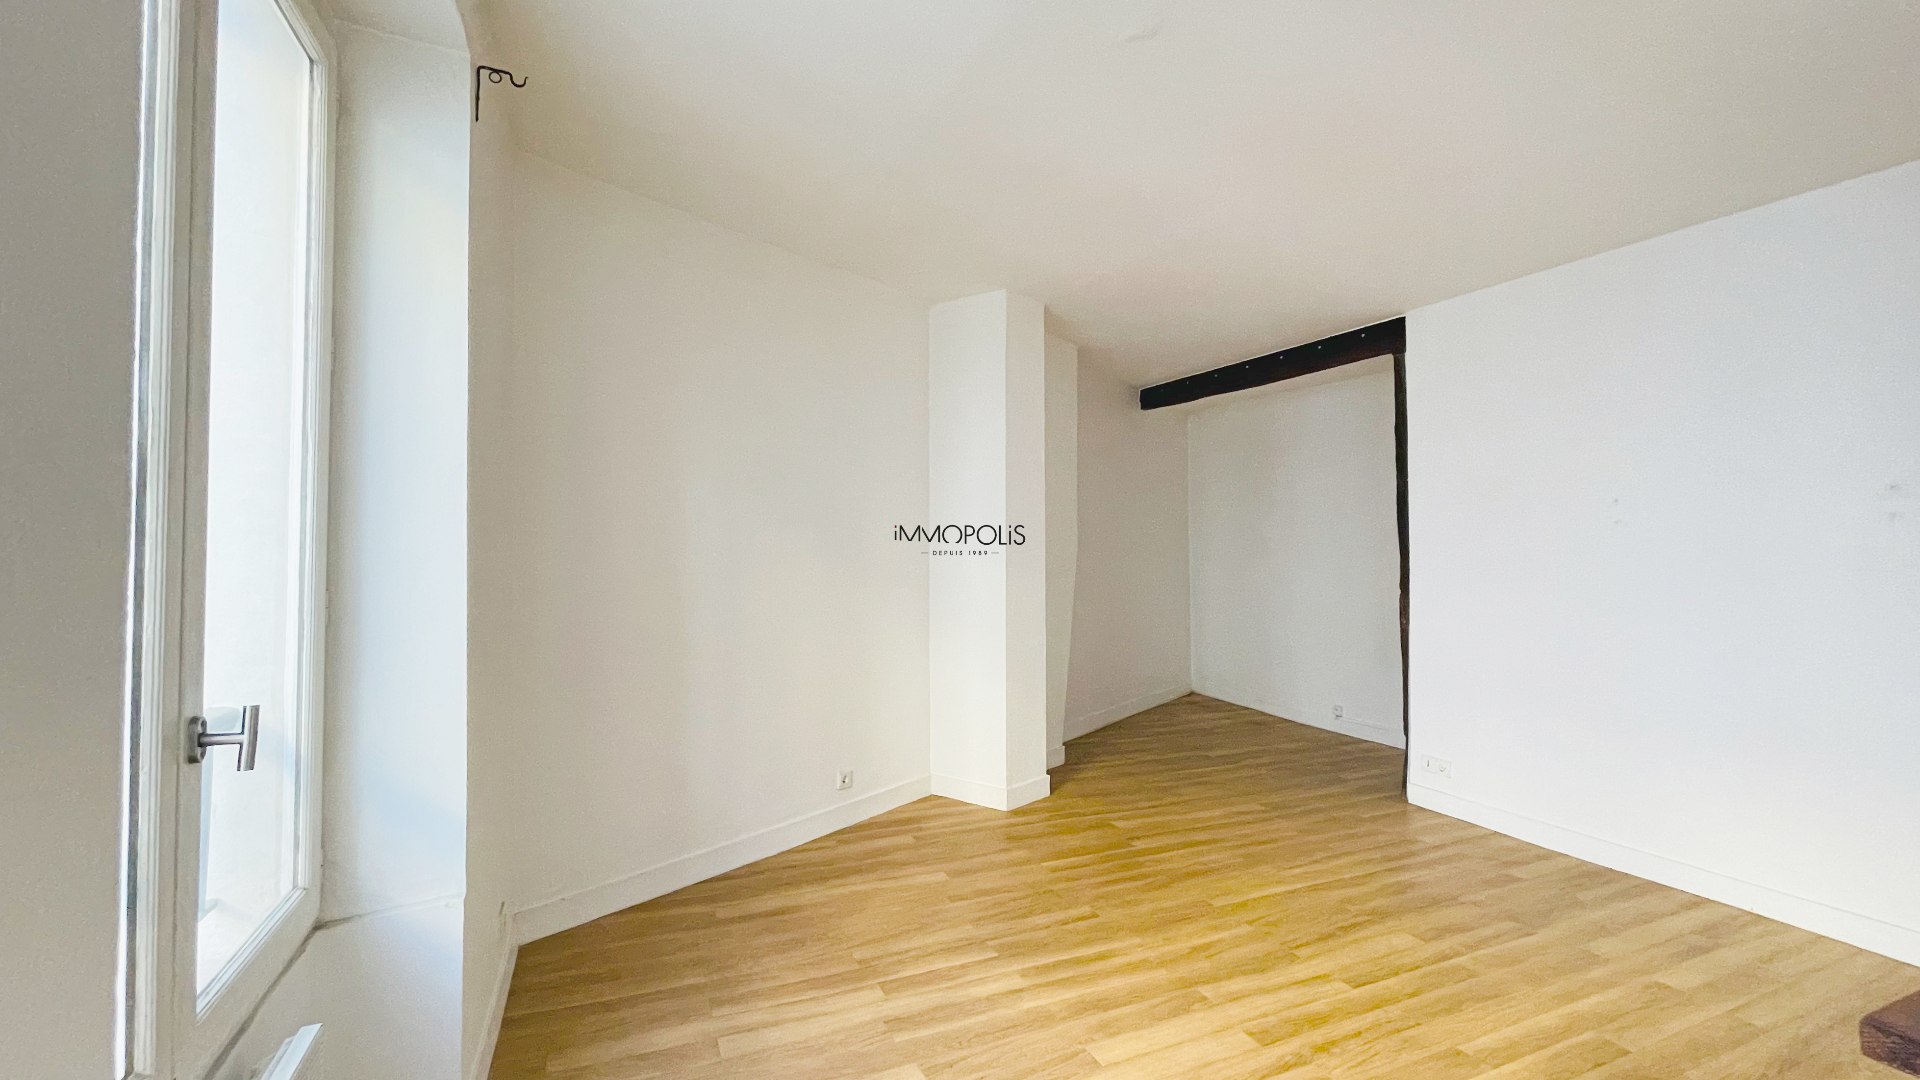 Beau studio à Montmartre, 30 M² sans perte de place situé dans un immeuble ravalé 5